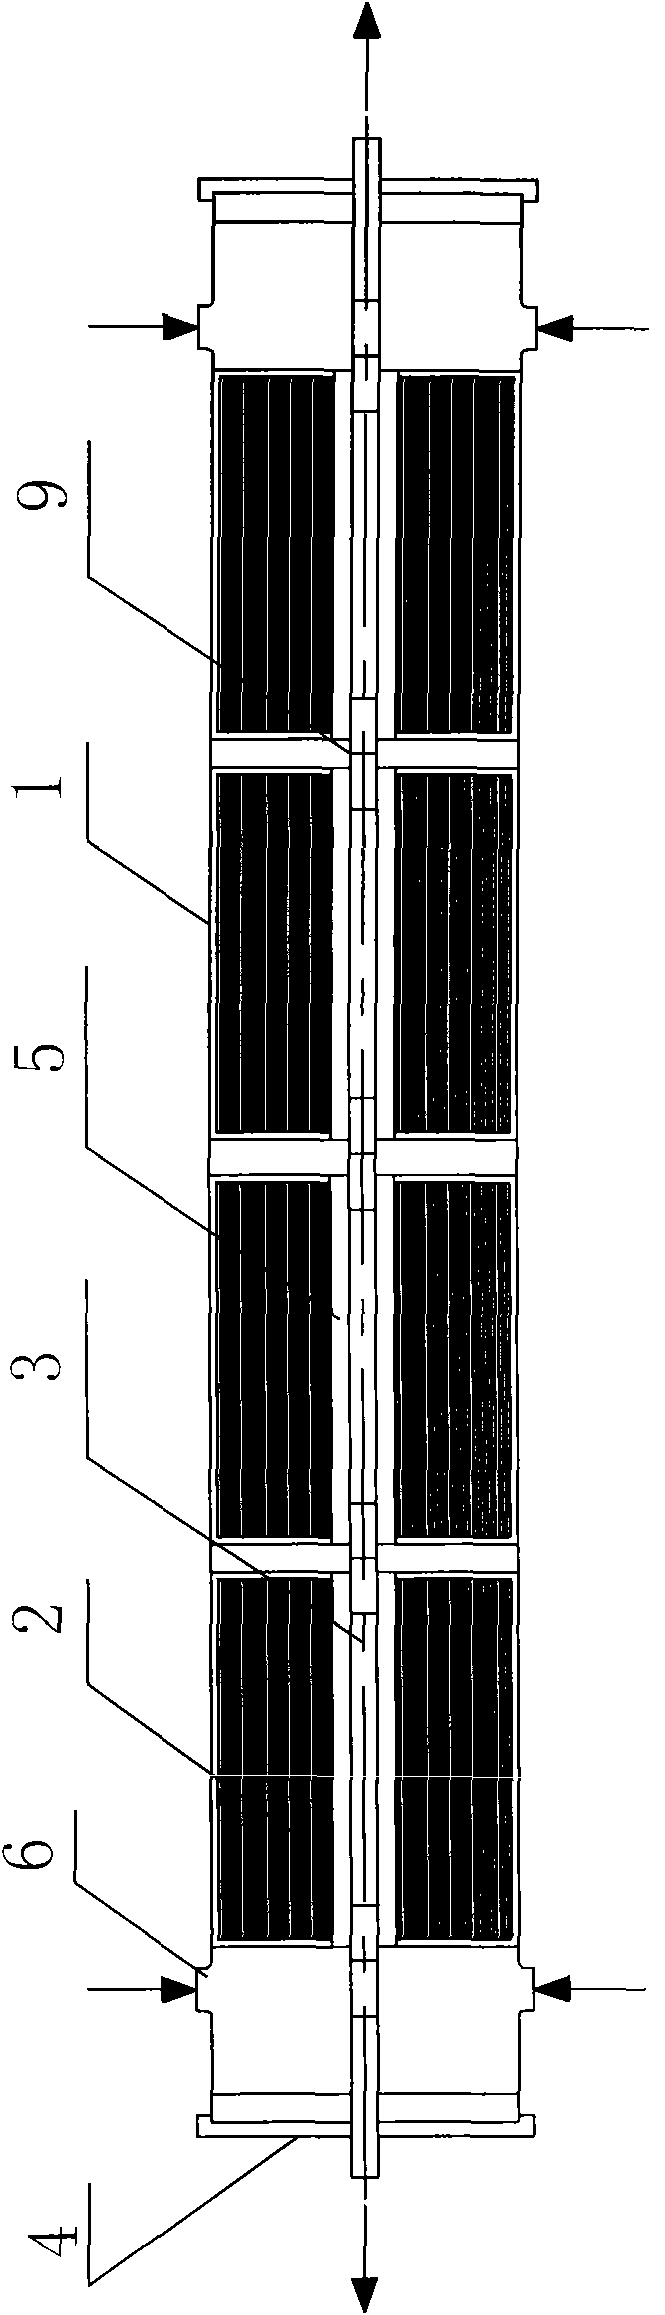 Novel membrane filtering system